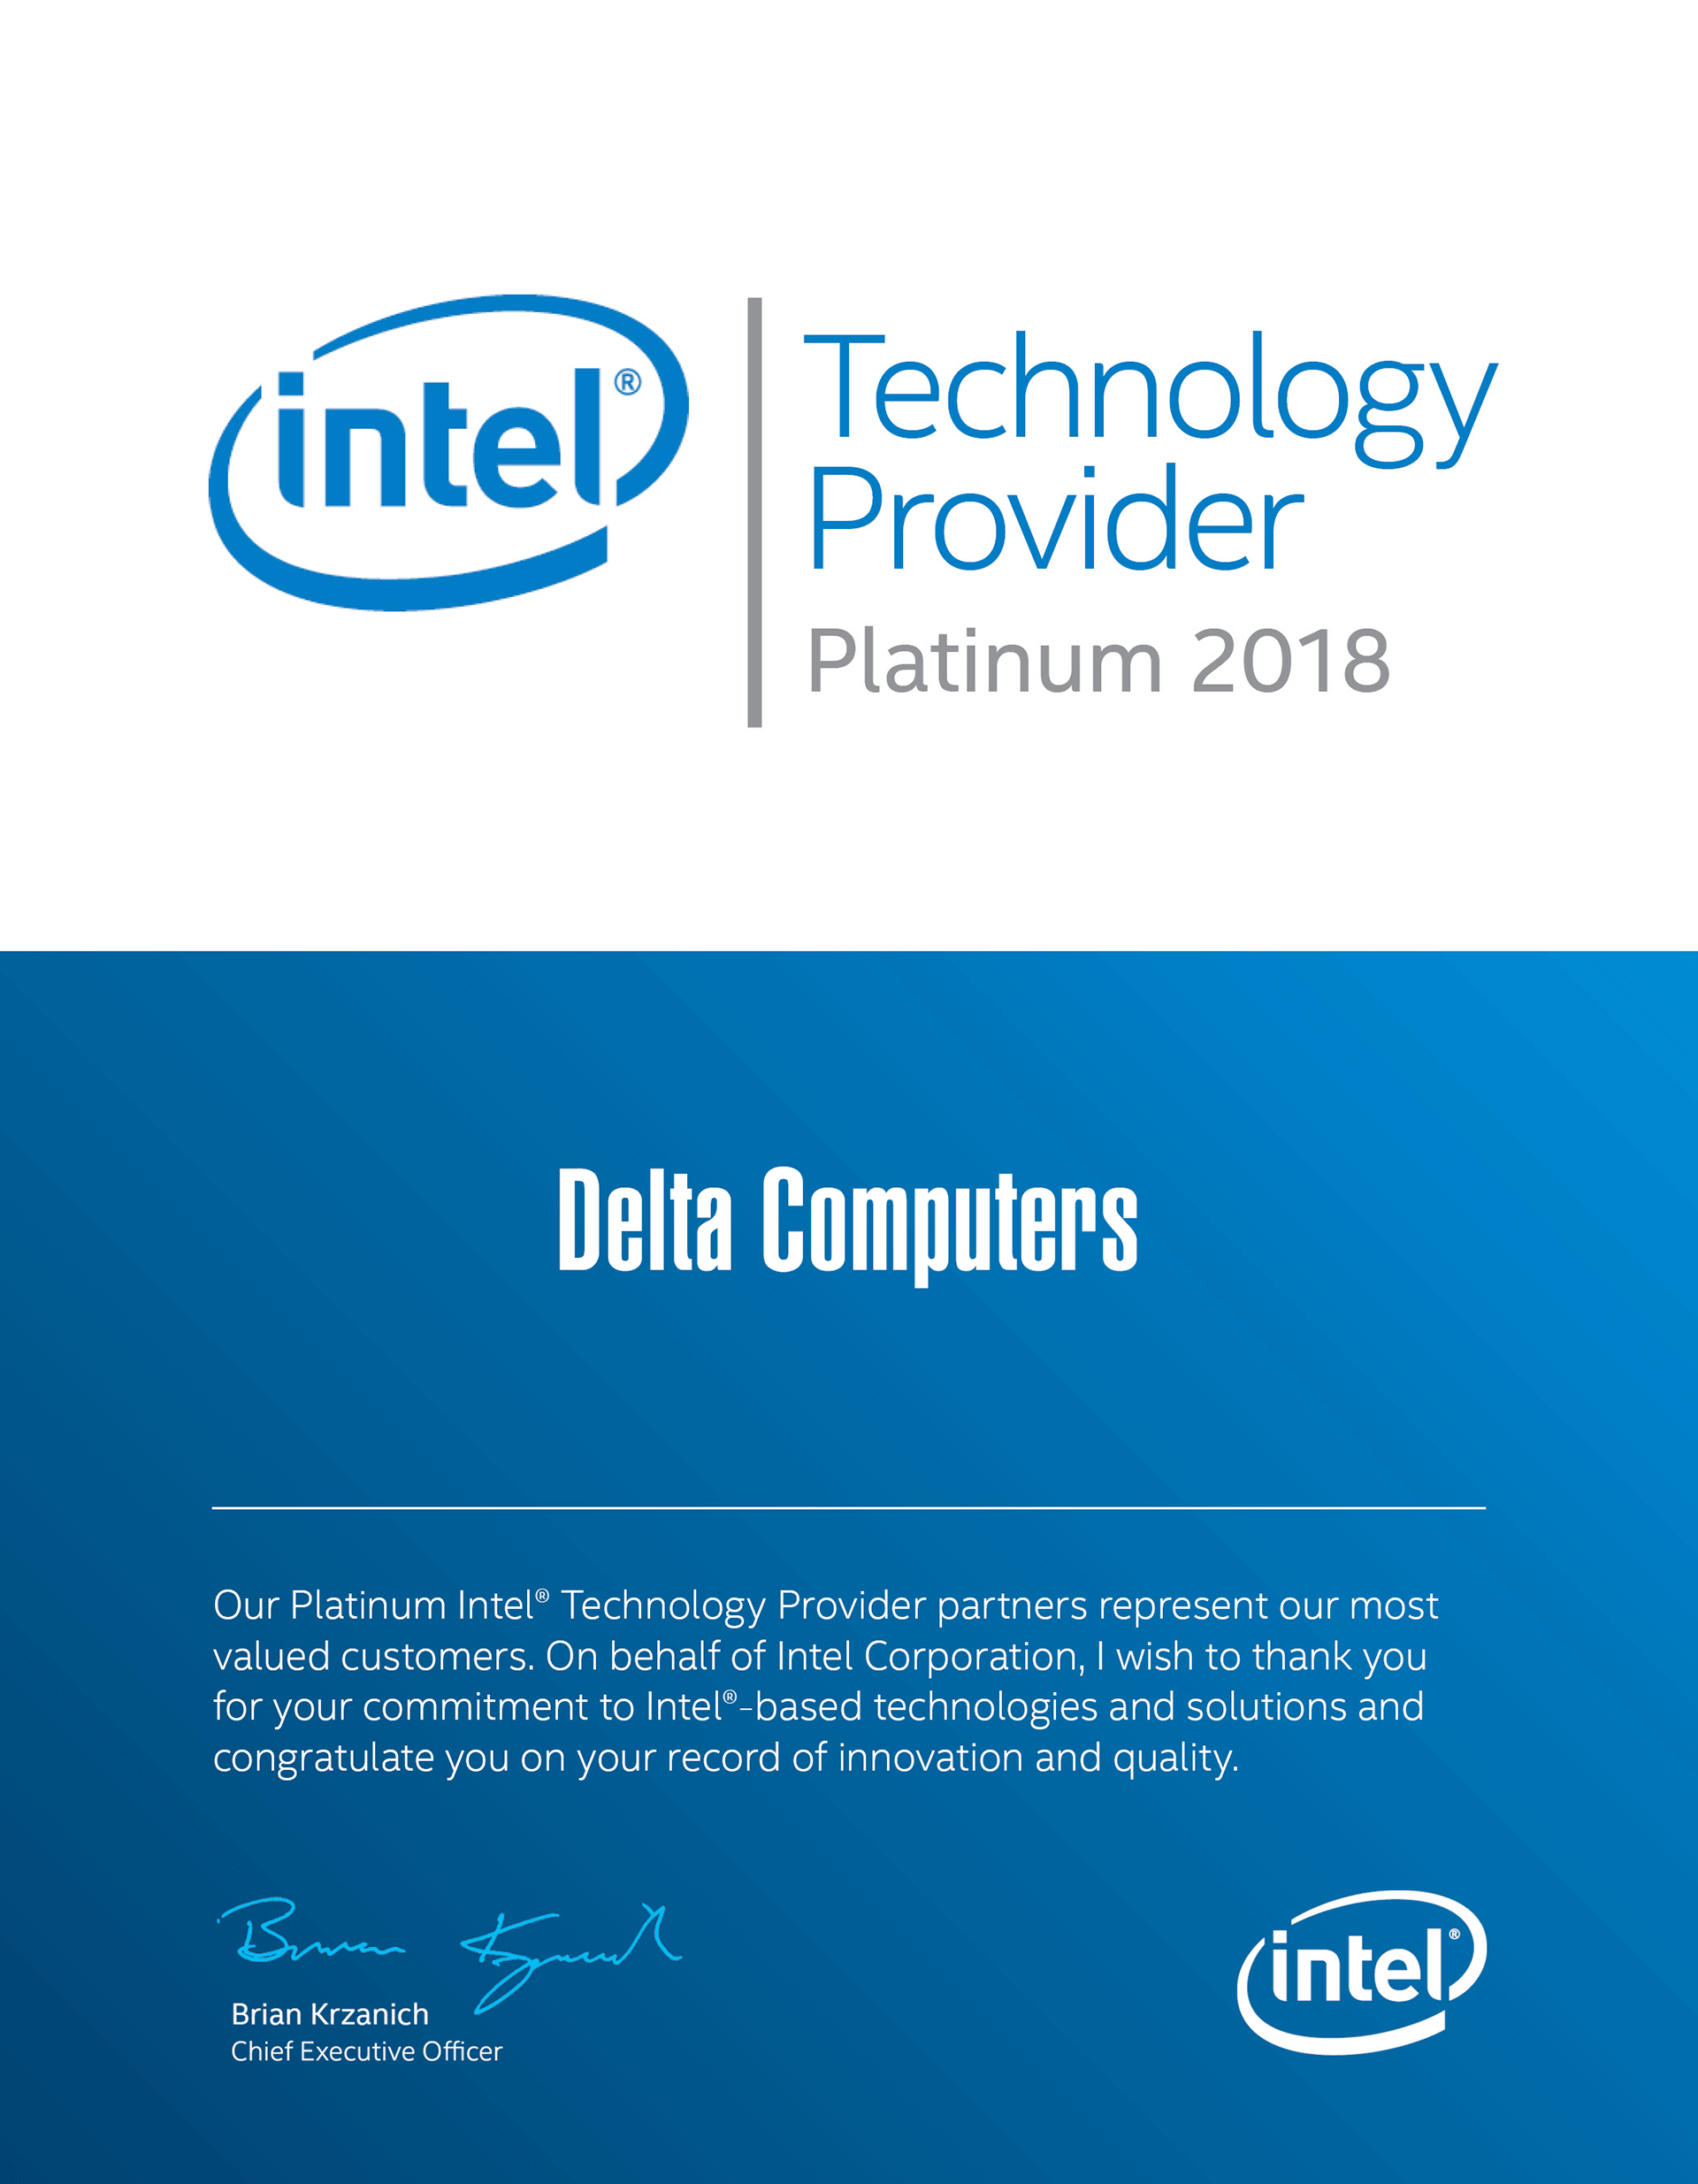 Intel Delta Computers